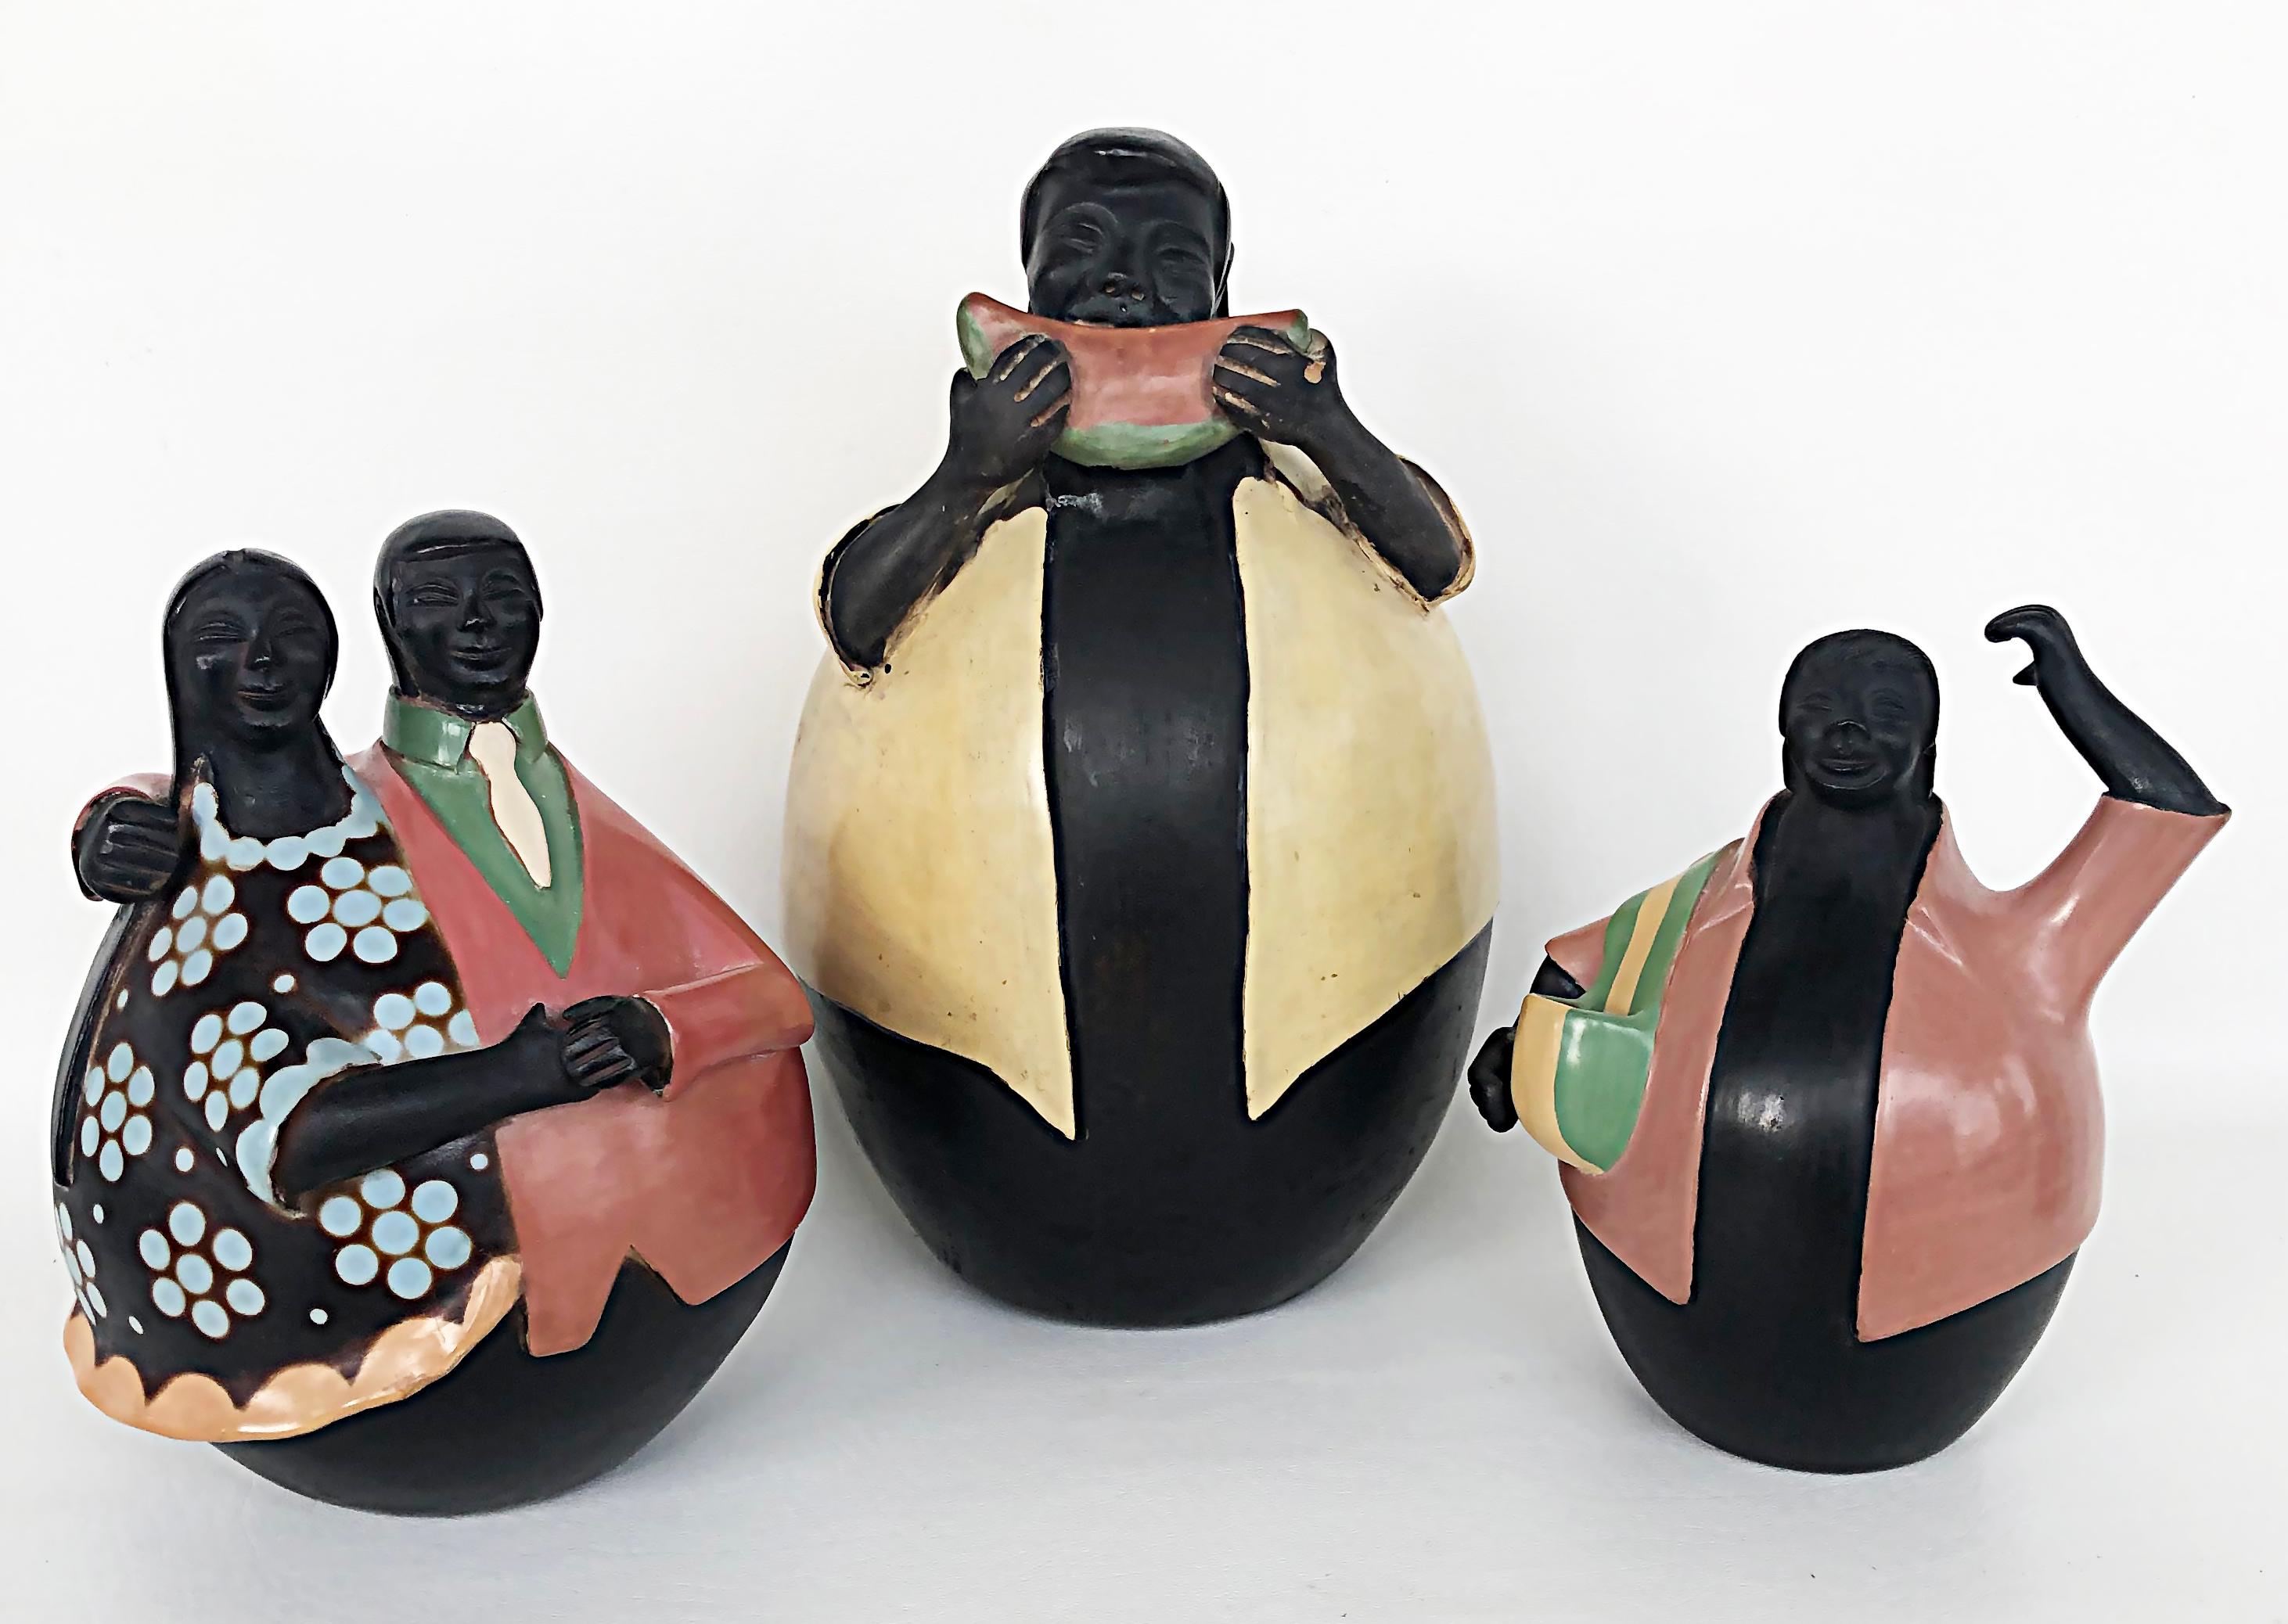 Manuel Sandoval Valez Latin American Folk Art Figurative Ceramic Sculpture For Sale 2